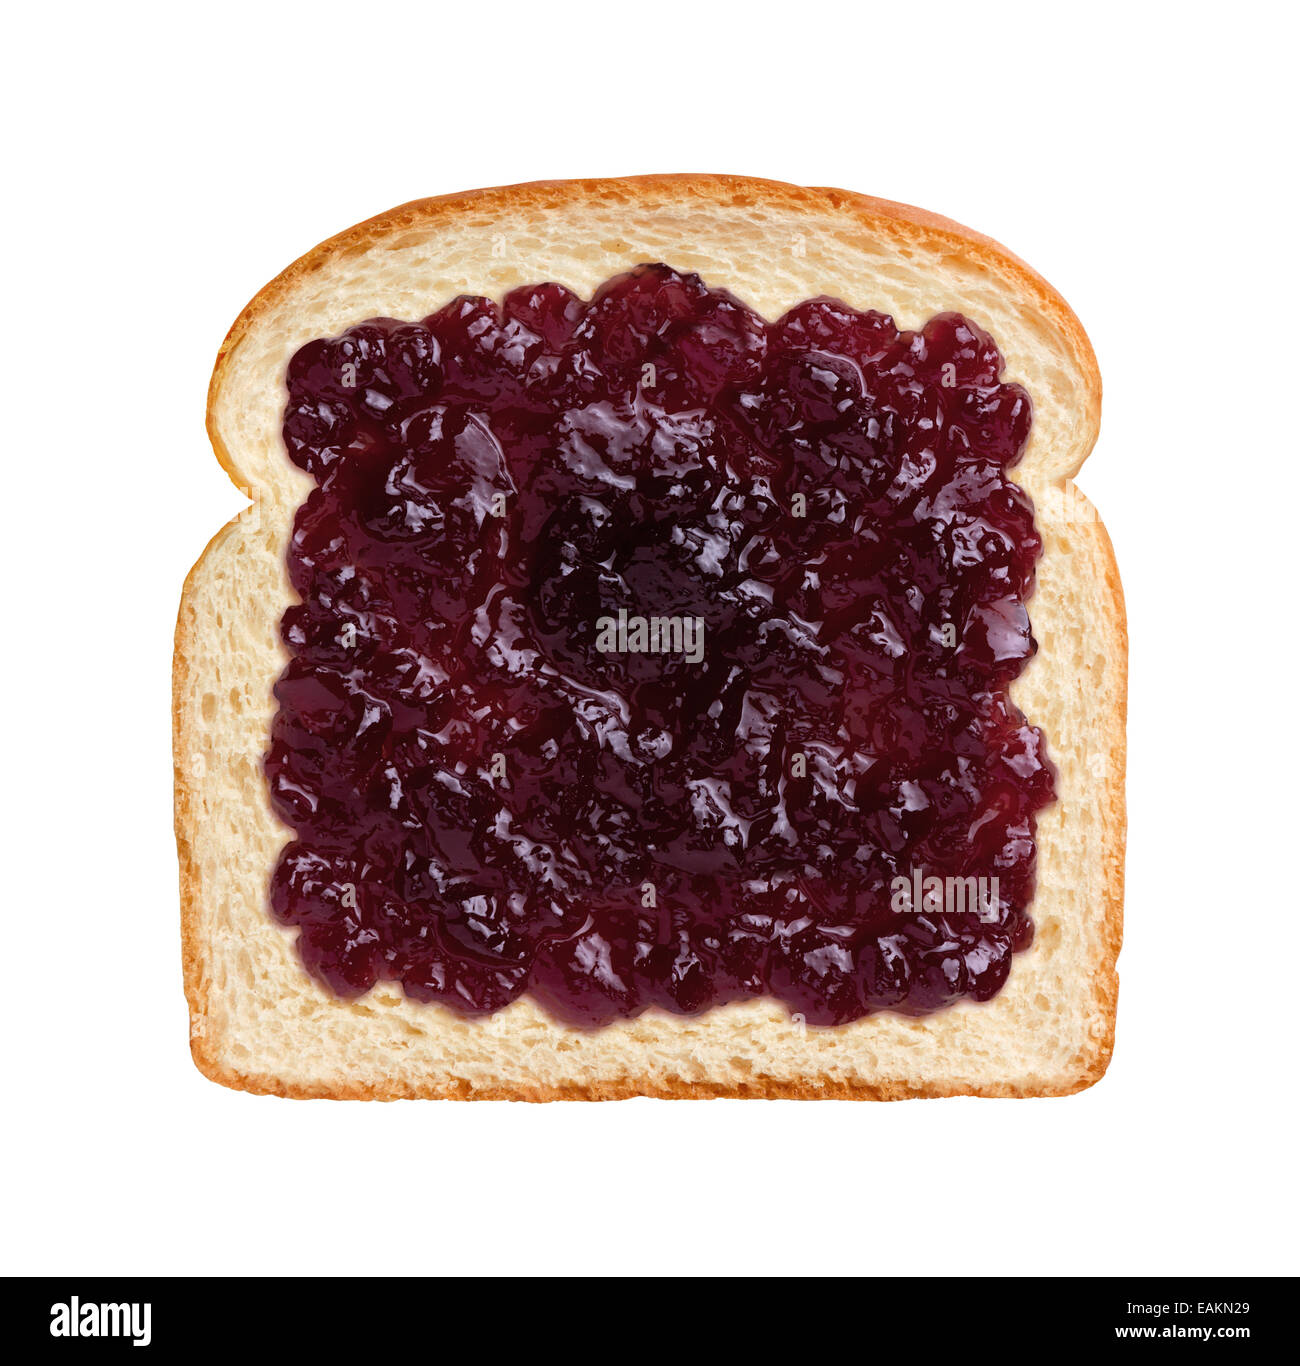 Blick auf eine einzige Scheibe Brot mit Trauben Gelee oder Marmelade. Stockfoto